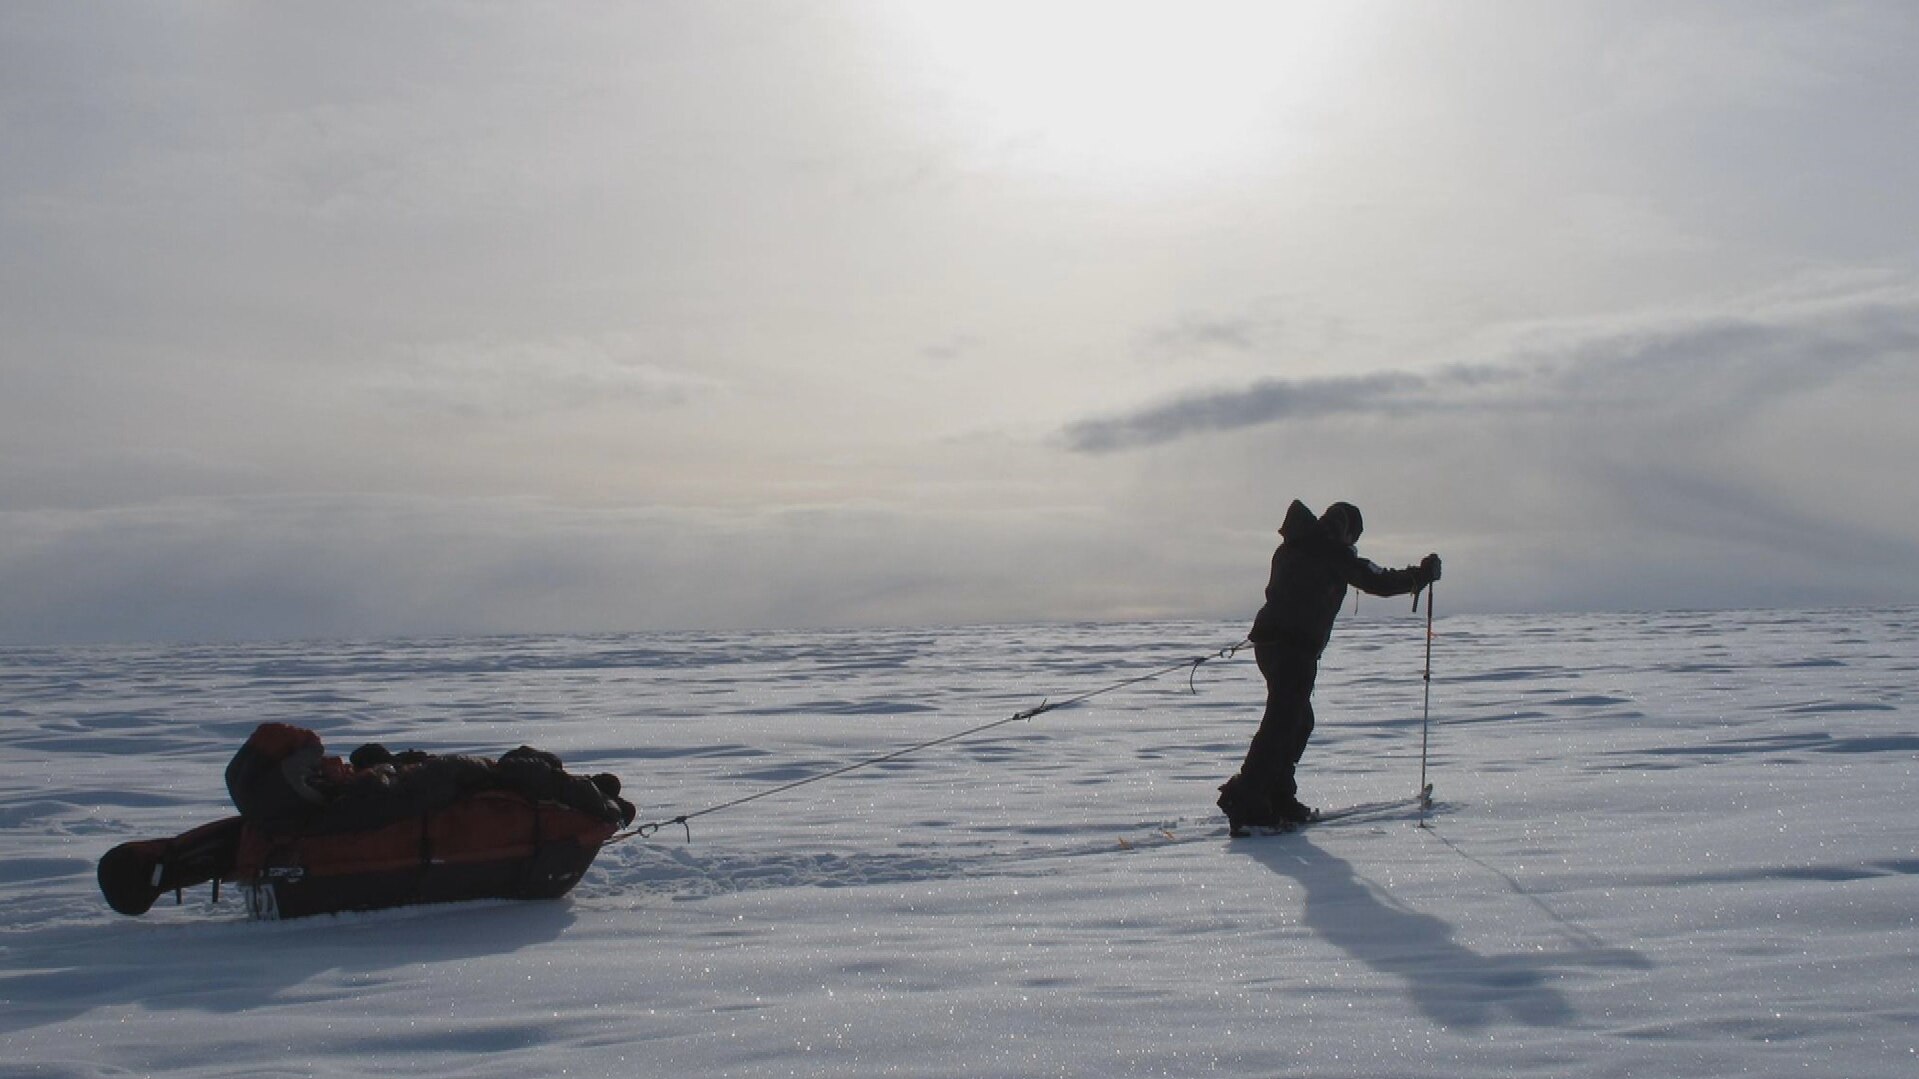 Plus de 1300 km de ski en solitaire vers le pôle Sud